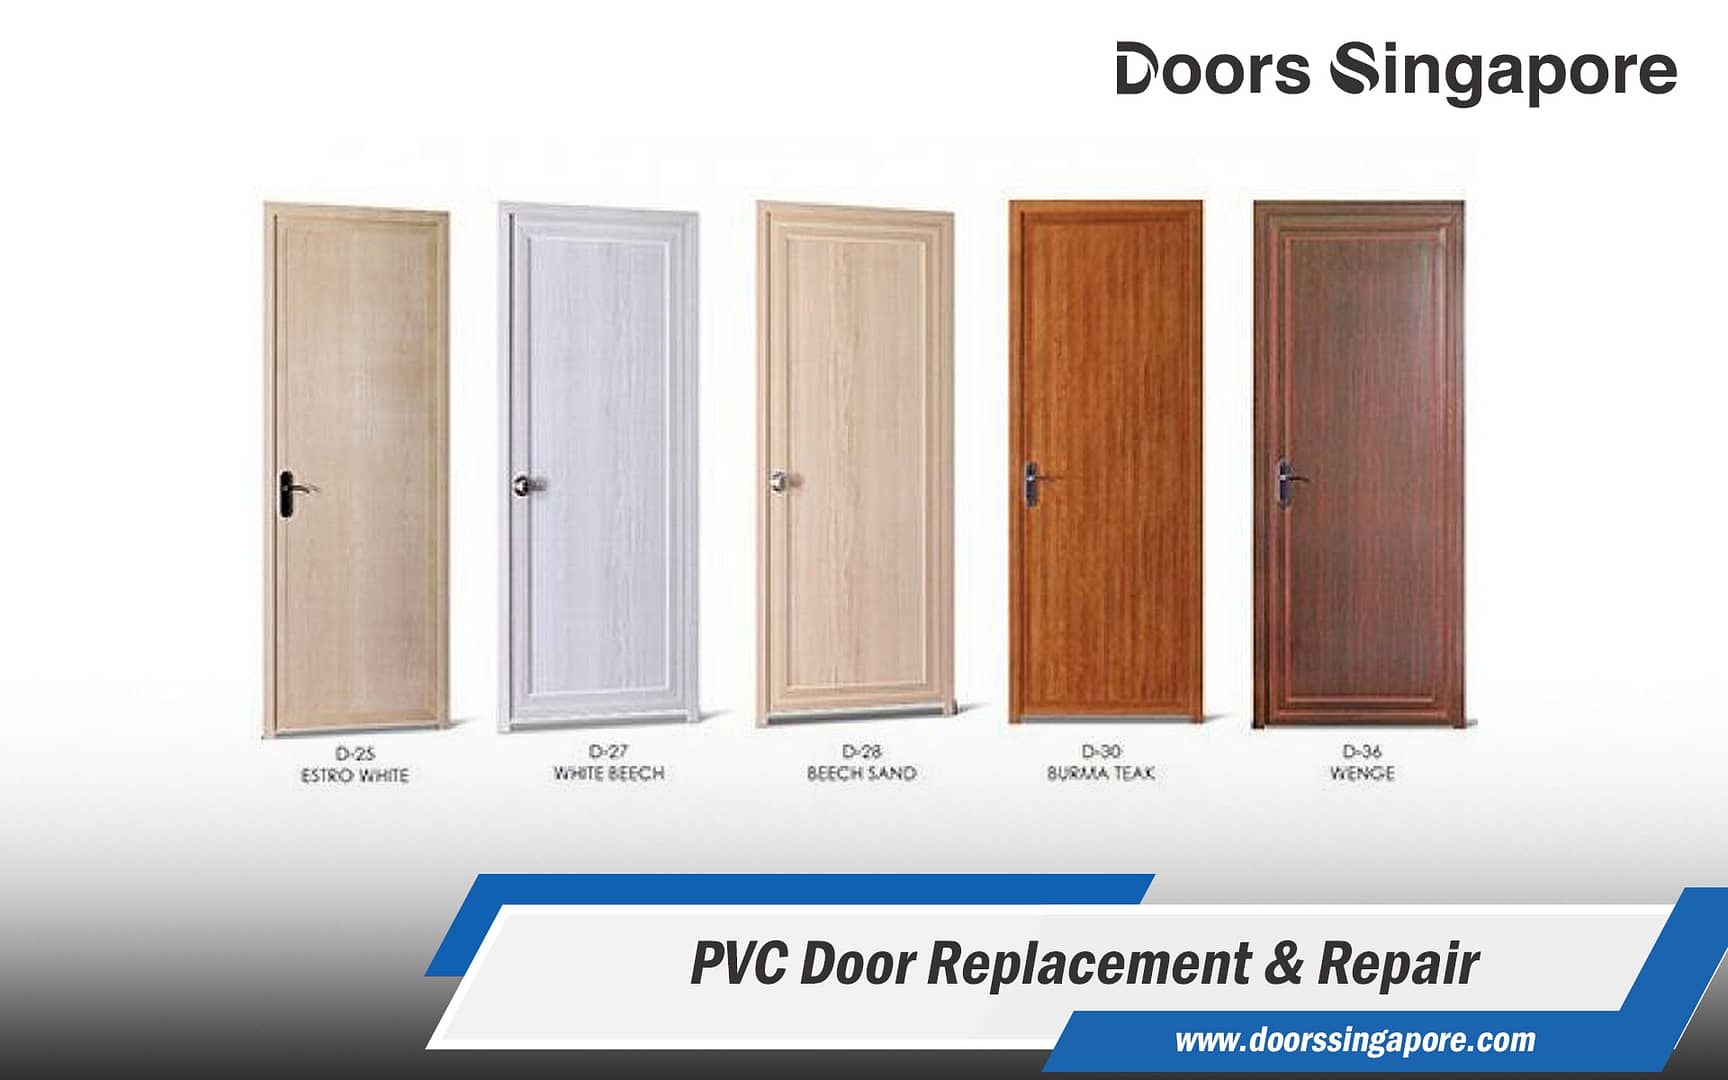 PVC Door Replacement & Repair